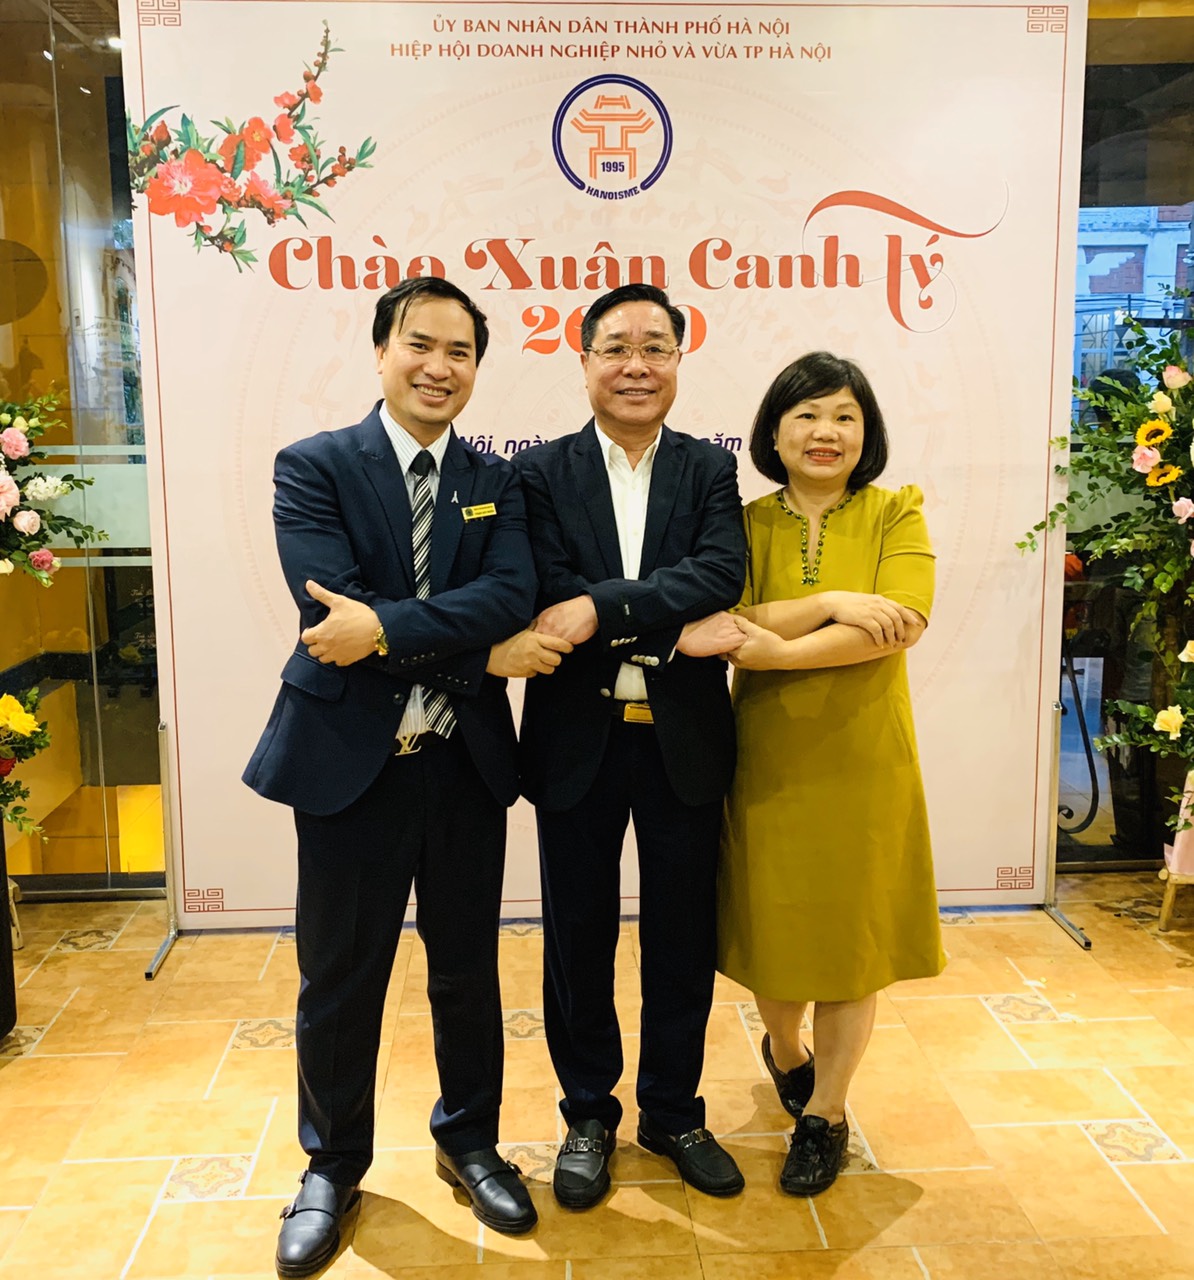 Năm 2019 - Năm thành công của doaonNăm 2019 đã chính thức khép lại với những con số tăng trưởng ấn tượng của nền kinh tế, trong đó có đóng góp không nhỏ của các tổ chức Hiệp hội và cộng đồng doanh nhân.h nhân Việt